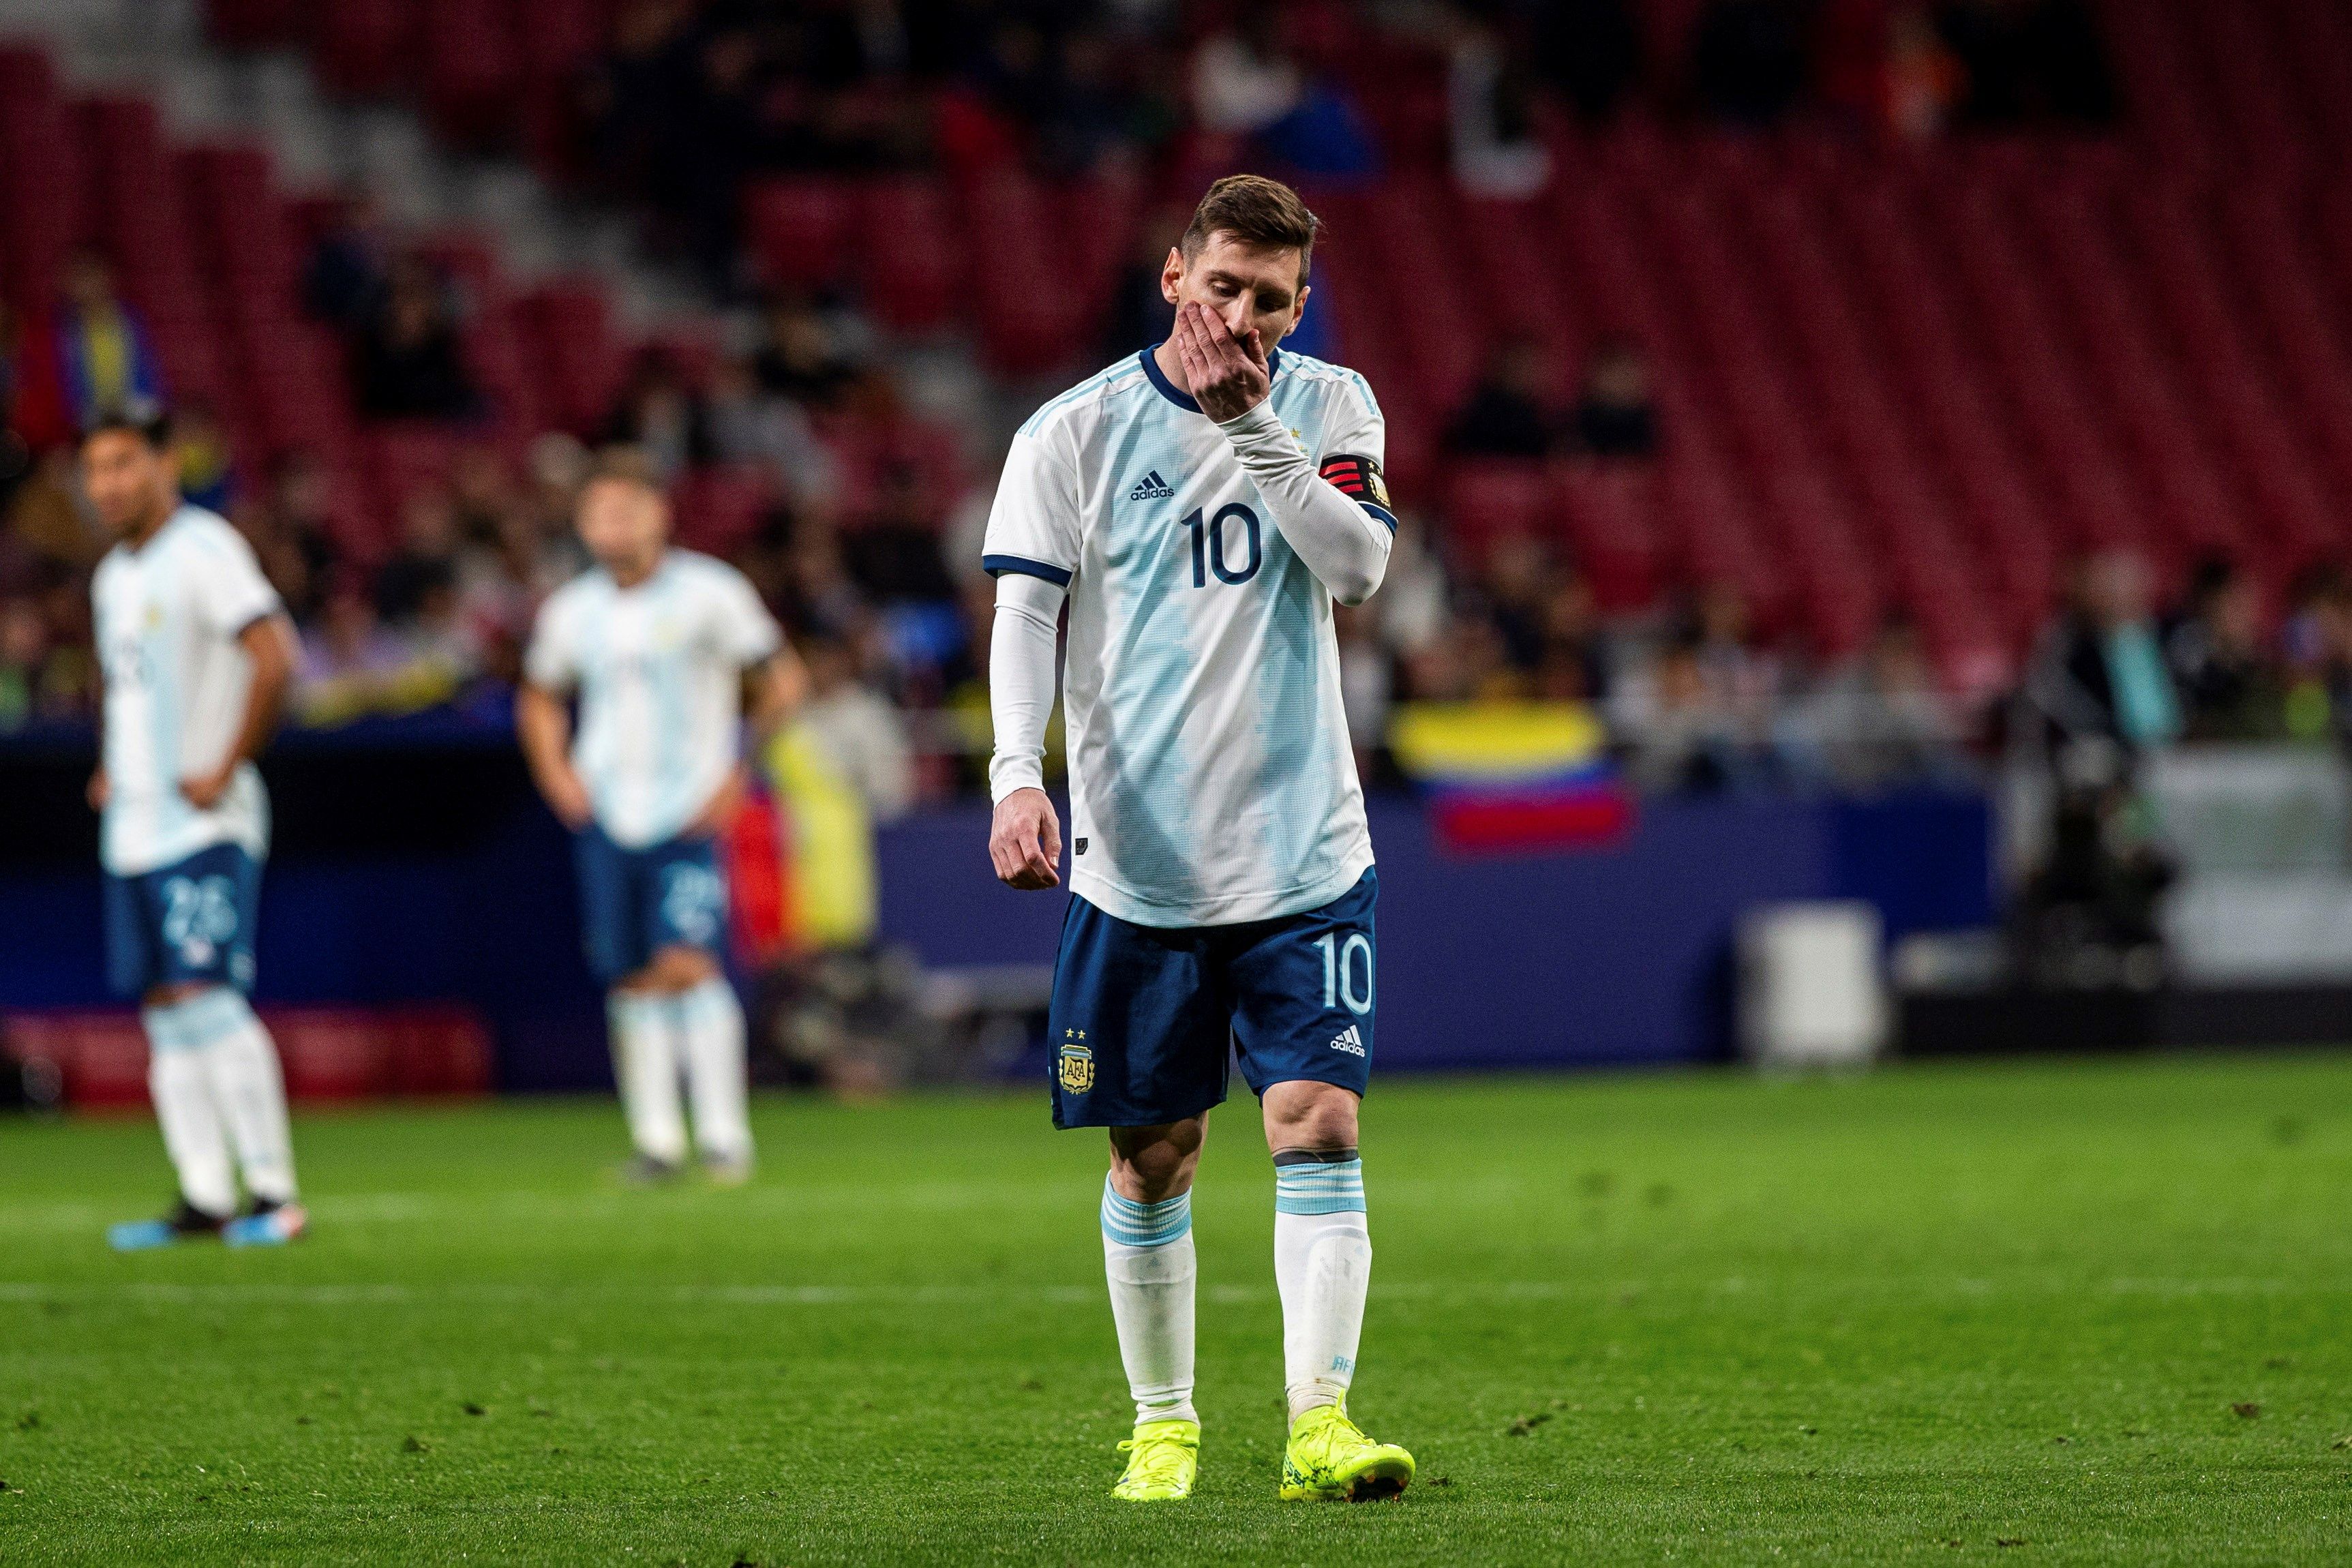 El delantero de Argentina Leo Messi durante el encuentro amistoso que Argentina y Venezuela disputan esta noche en el estadio Wanda Metropolitano, en Madrid. (Foto Prensa Libre: EFE)